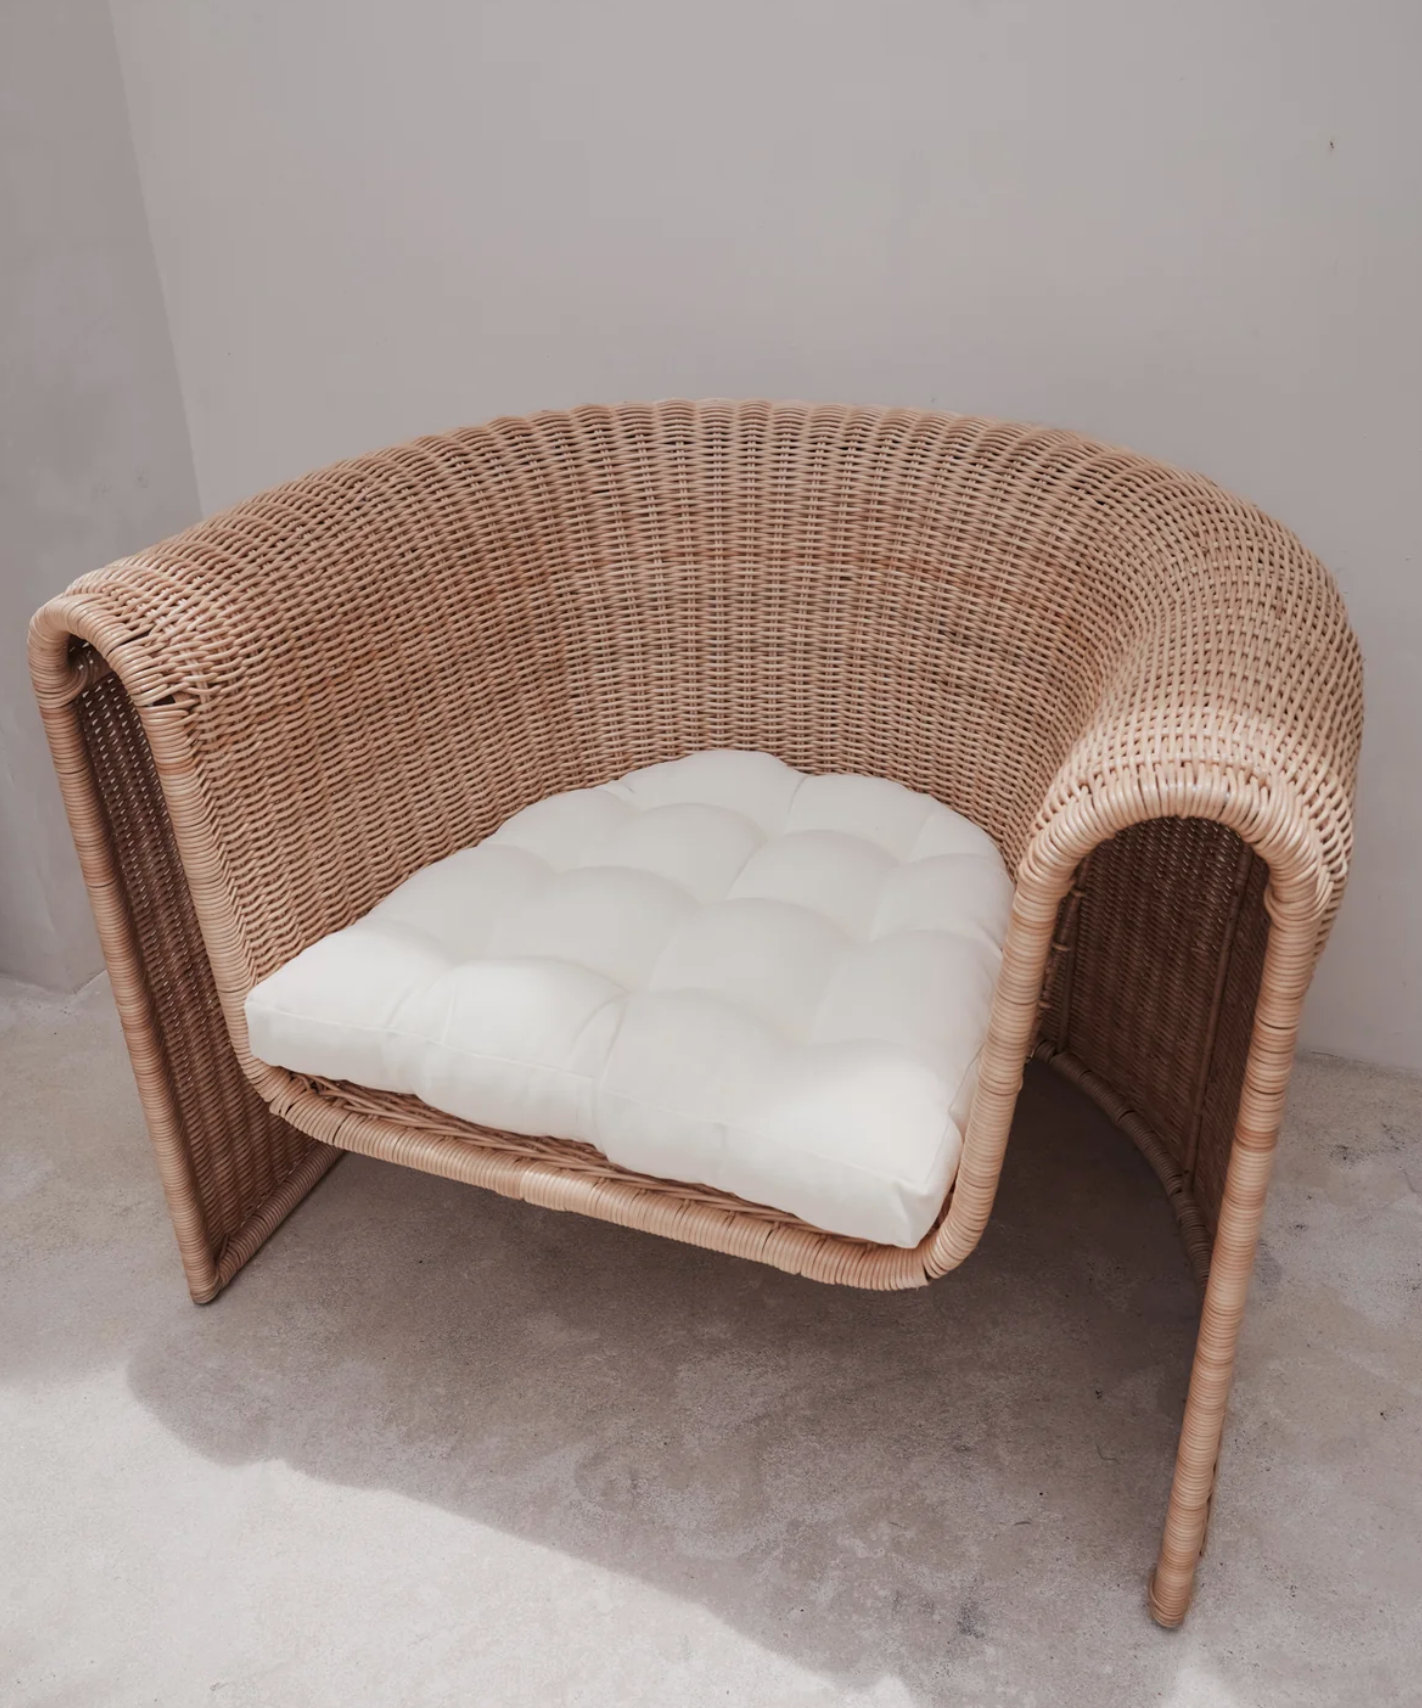 The Palma Chair